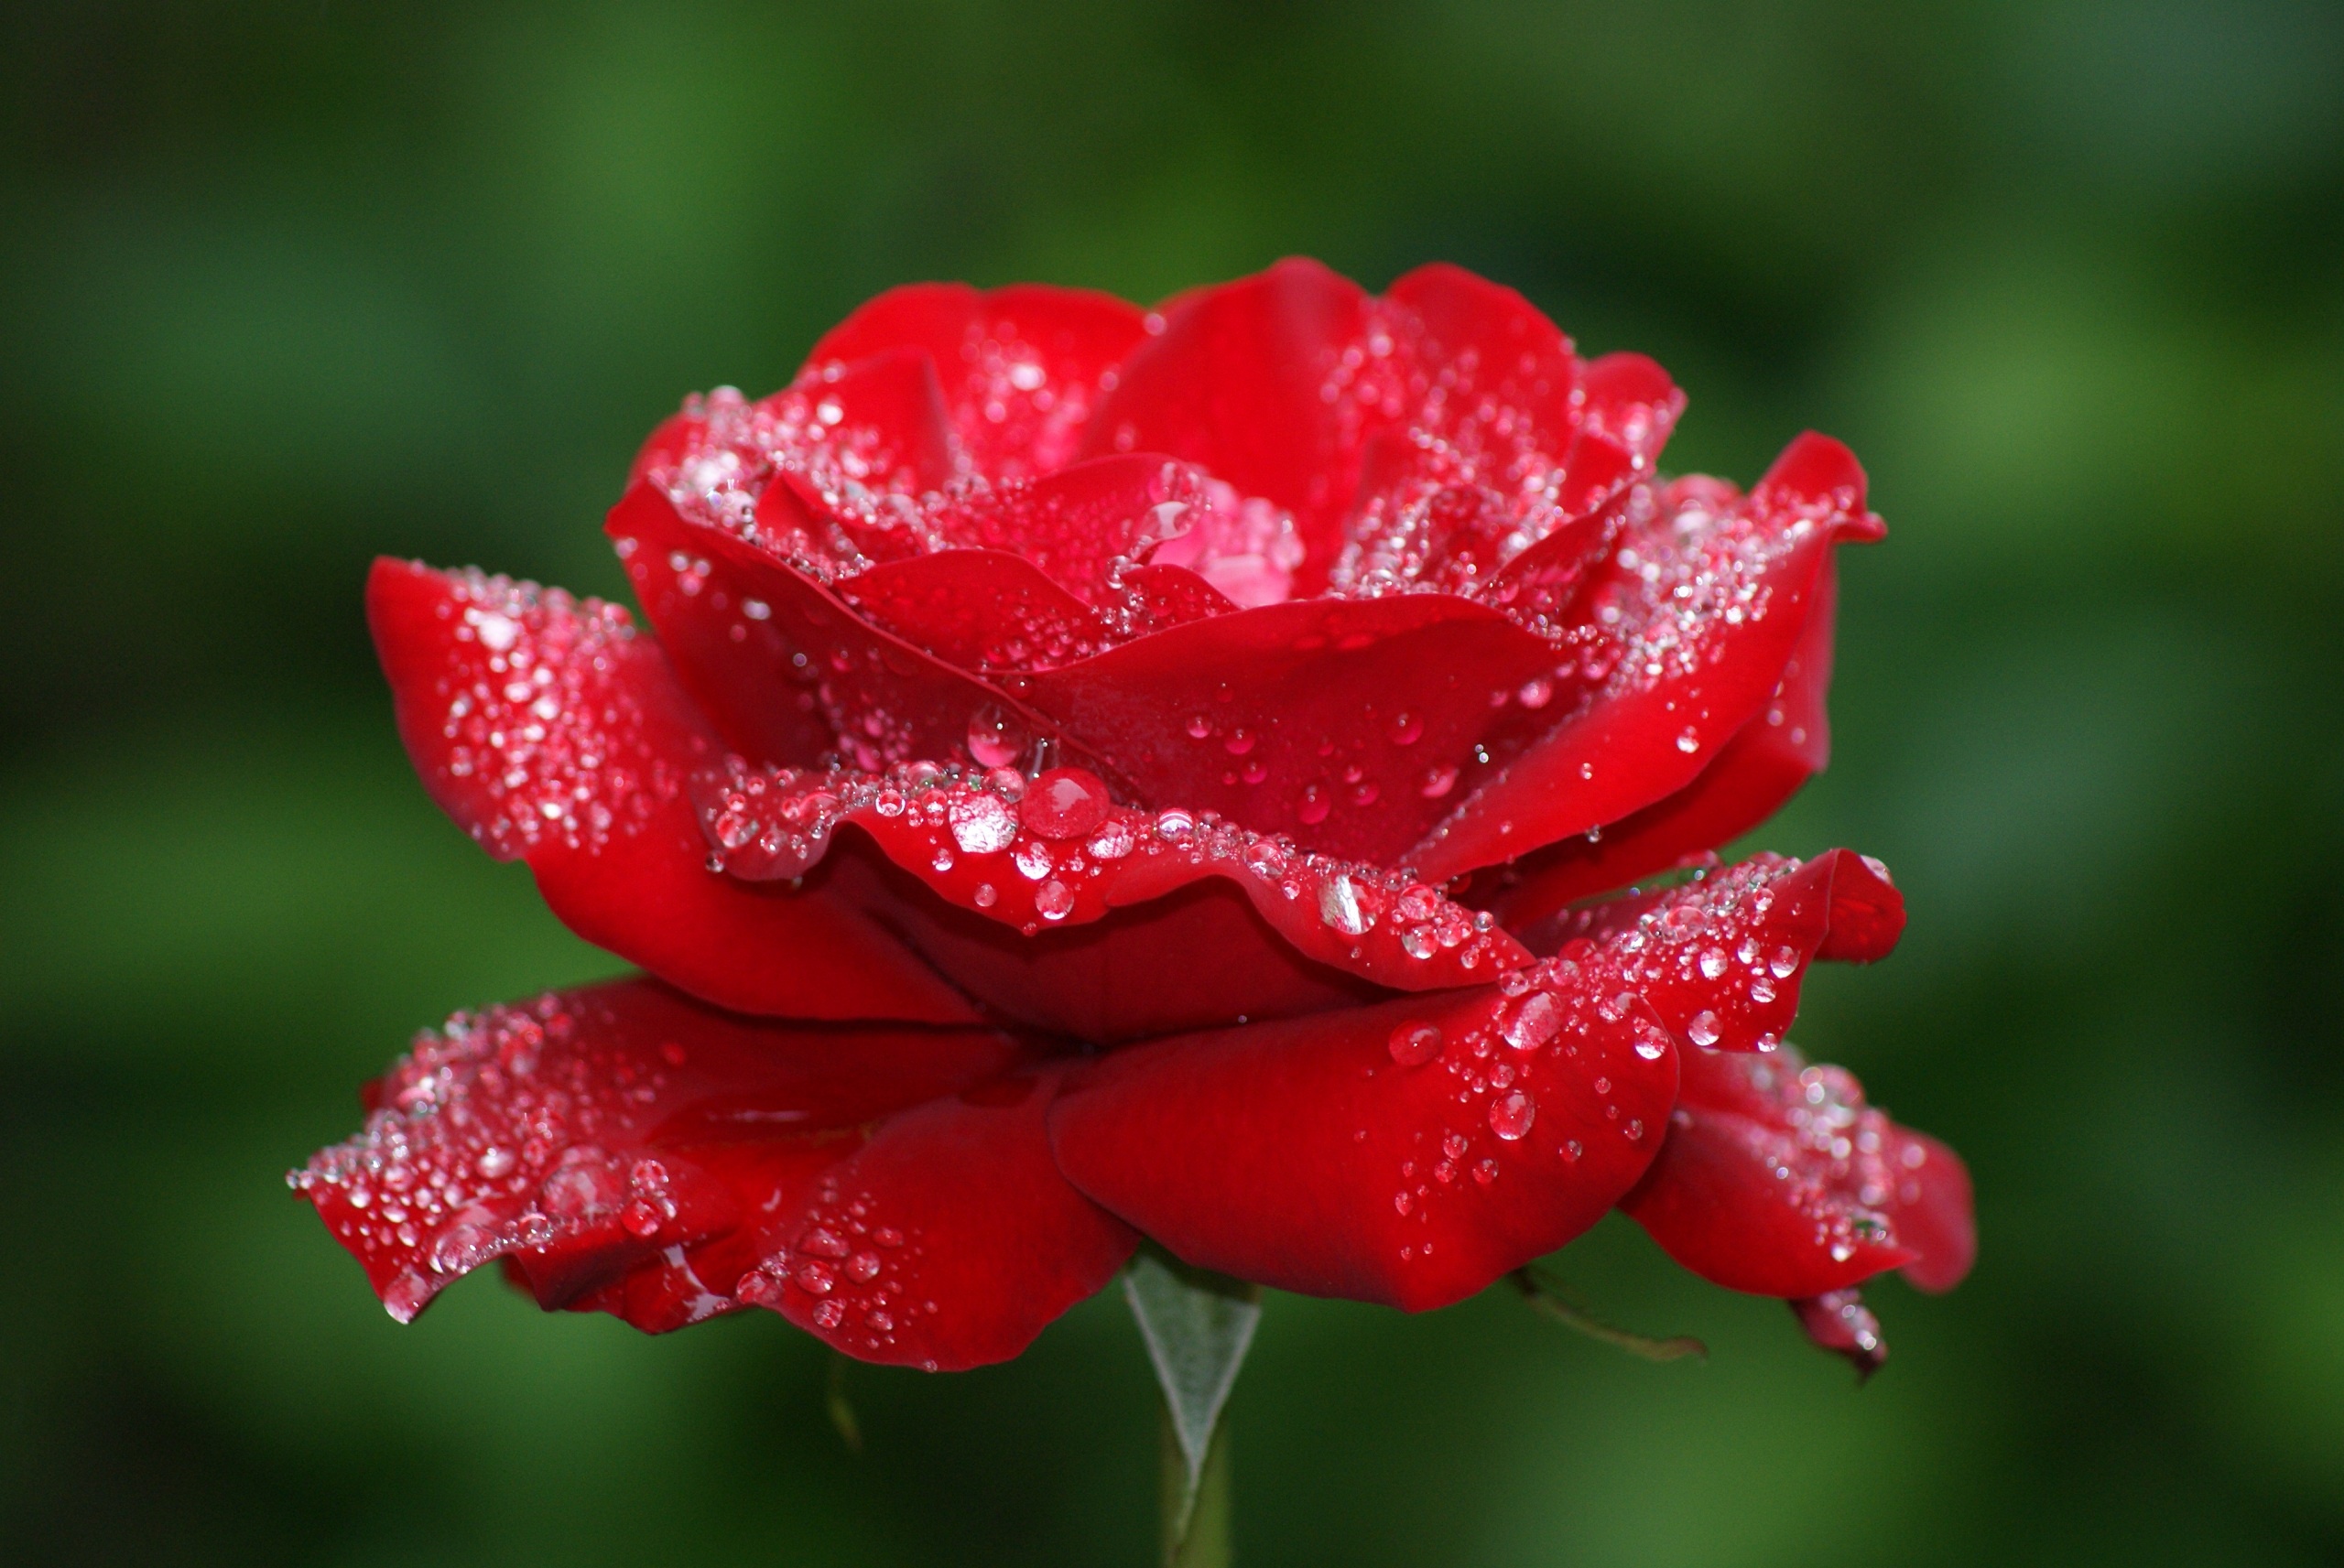 Gây ấn tượng mạnh với hình nền hoa hồng đỏ tươi rực rỡ. Với những bông hoa hồng đỏ đầy cuốn hút, bạn sẽ thấy mình được đưa vào một không gian đẹp tuyệt vời và kích thích mọi giác quan của mình.